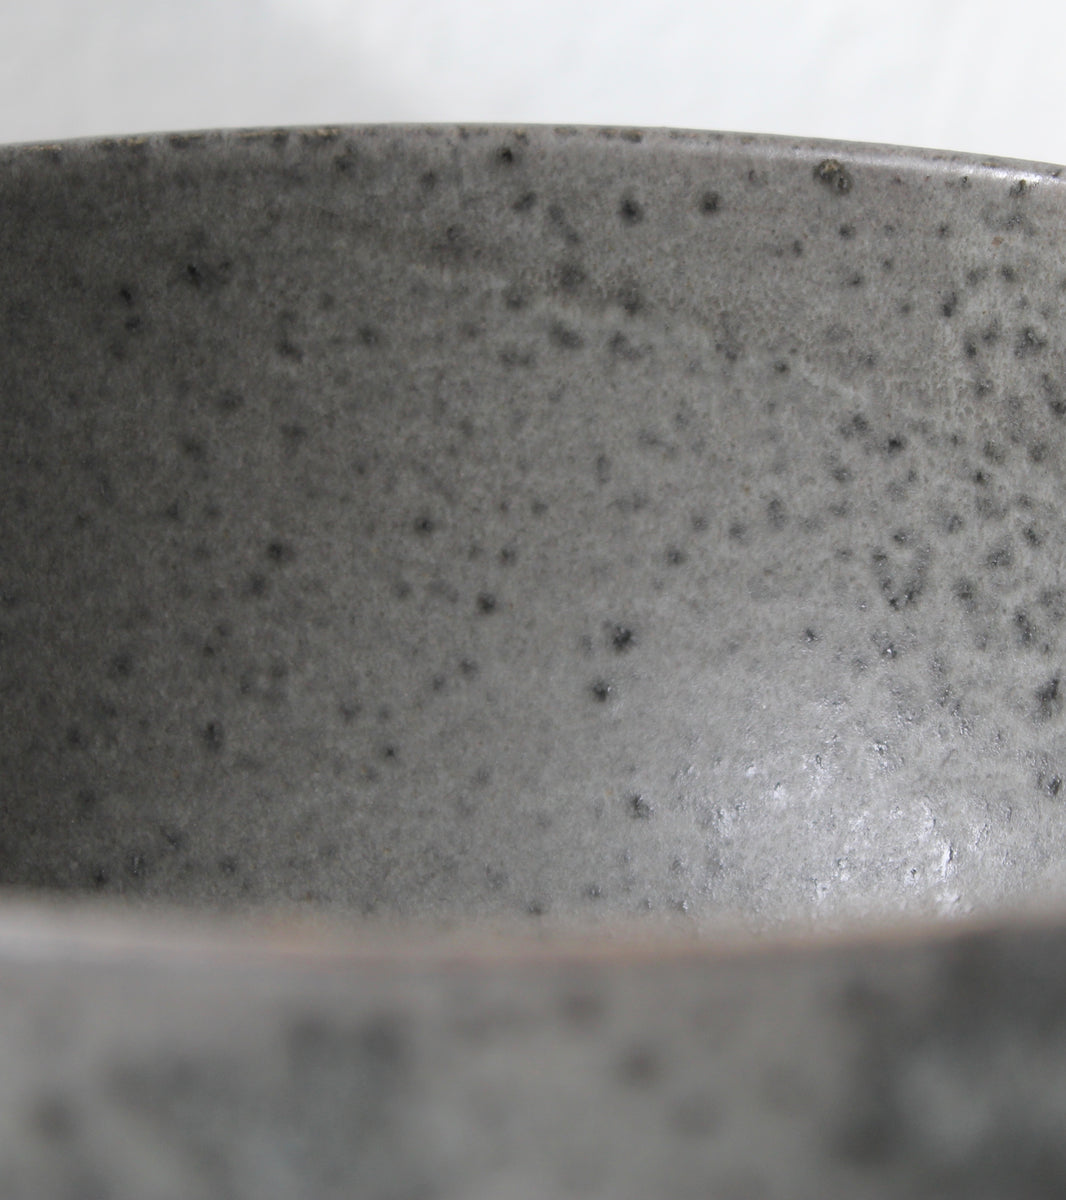 Deep Karahi Pot Shaped Bowl / Grey Glaze